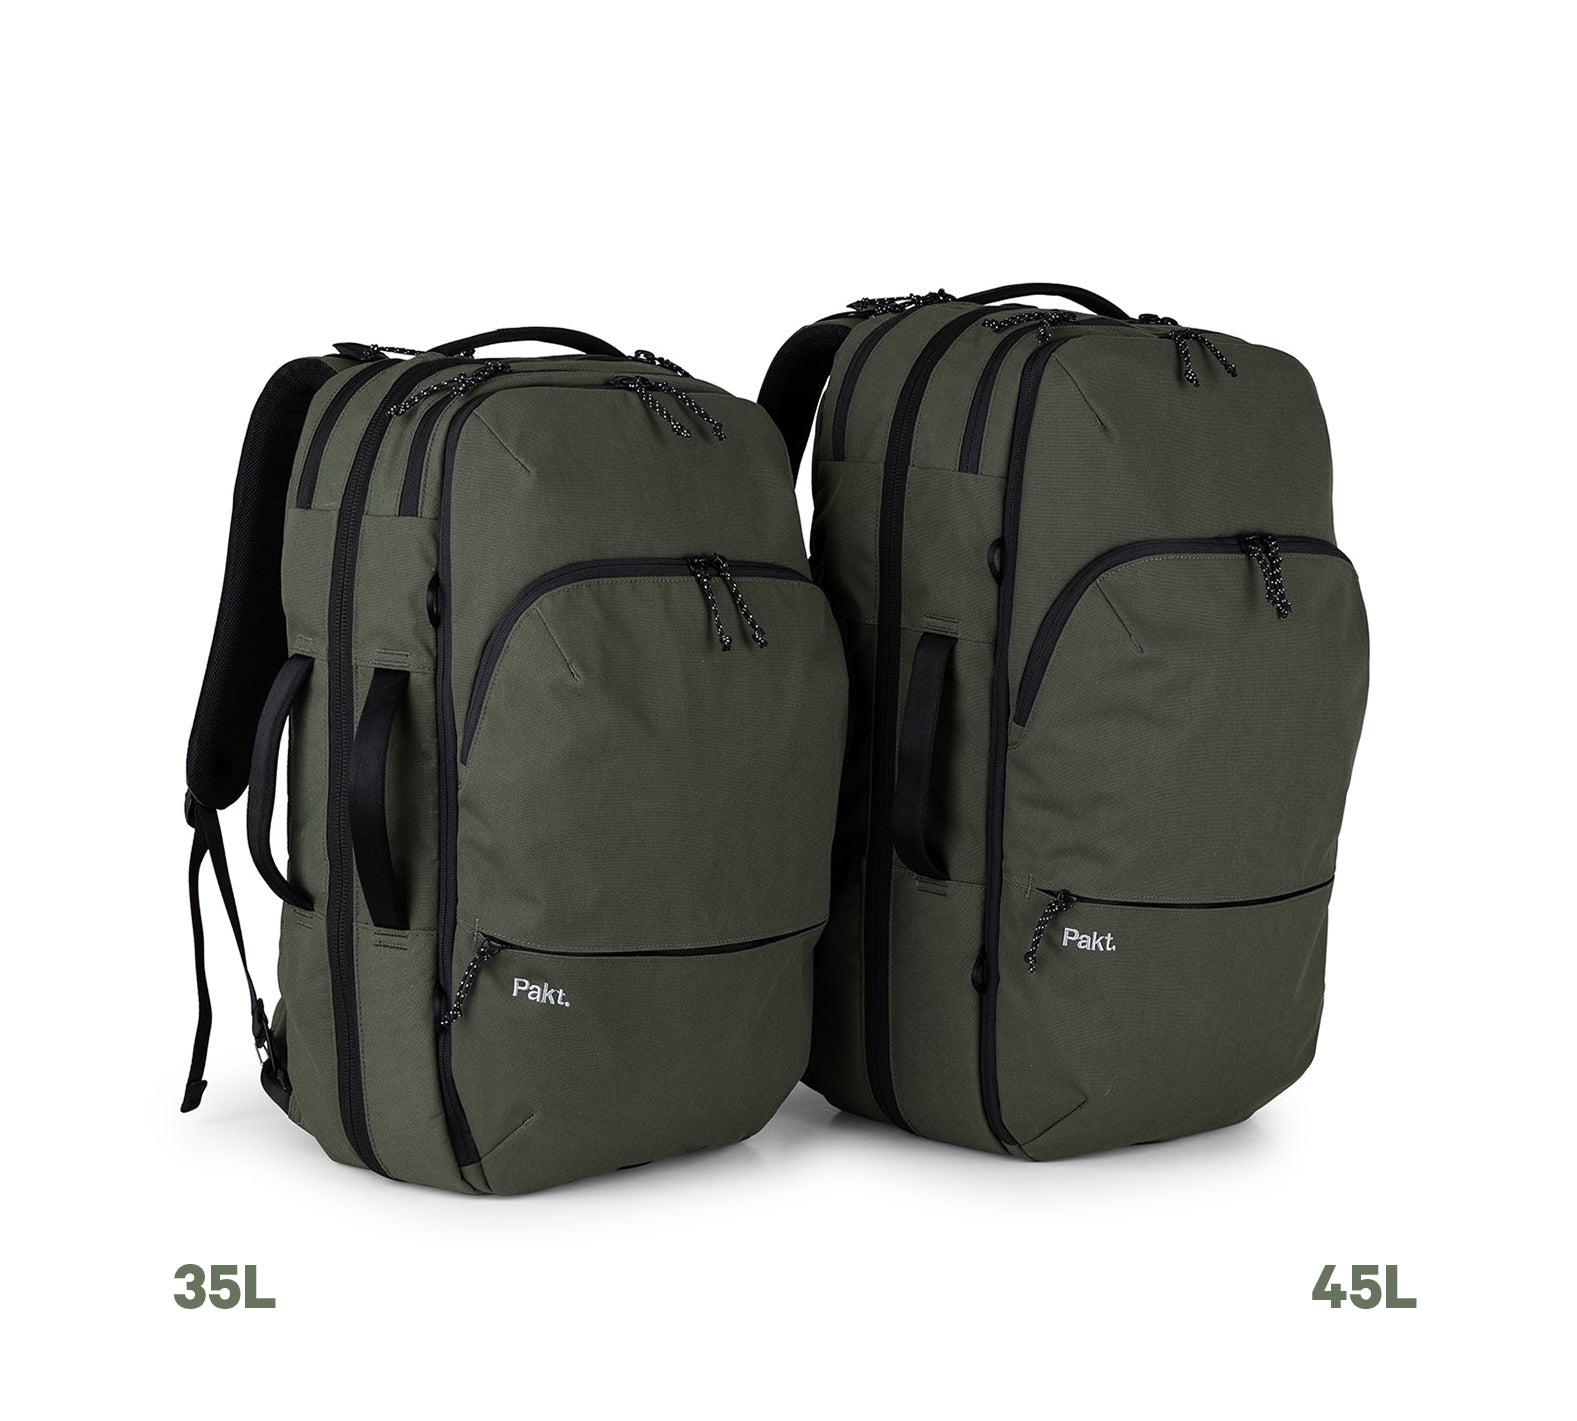 Women's backpack Nike One - Backpacks - Bags - Equipment